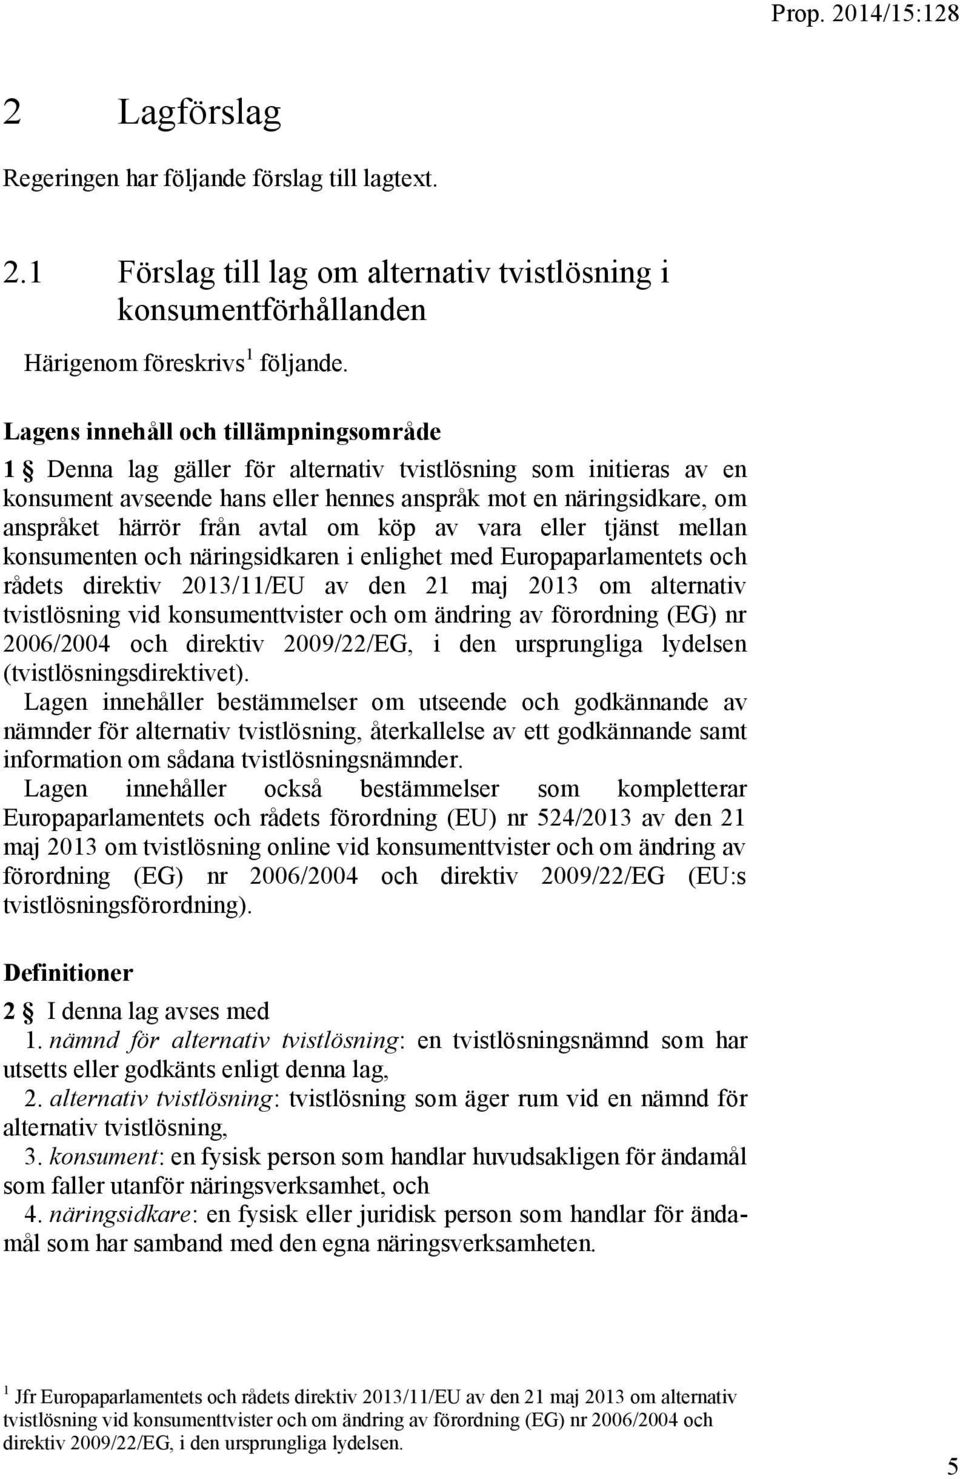 avtal om köp av vara eller tjänst mellan konsumenten och näringsidkaren i enlighet med Europaparlamentets och rådets direktiv 2013/11/EU av den 21 maj 2013 om alternativ tvistlösning vid